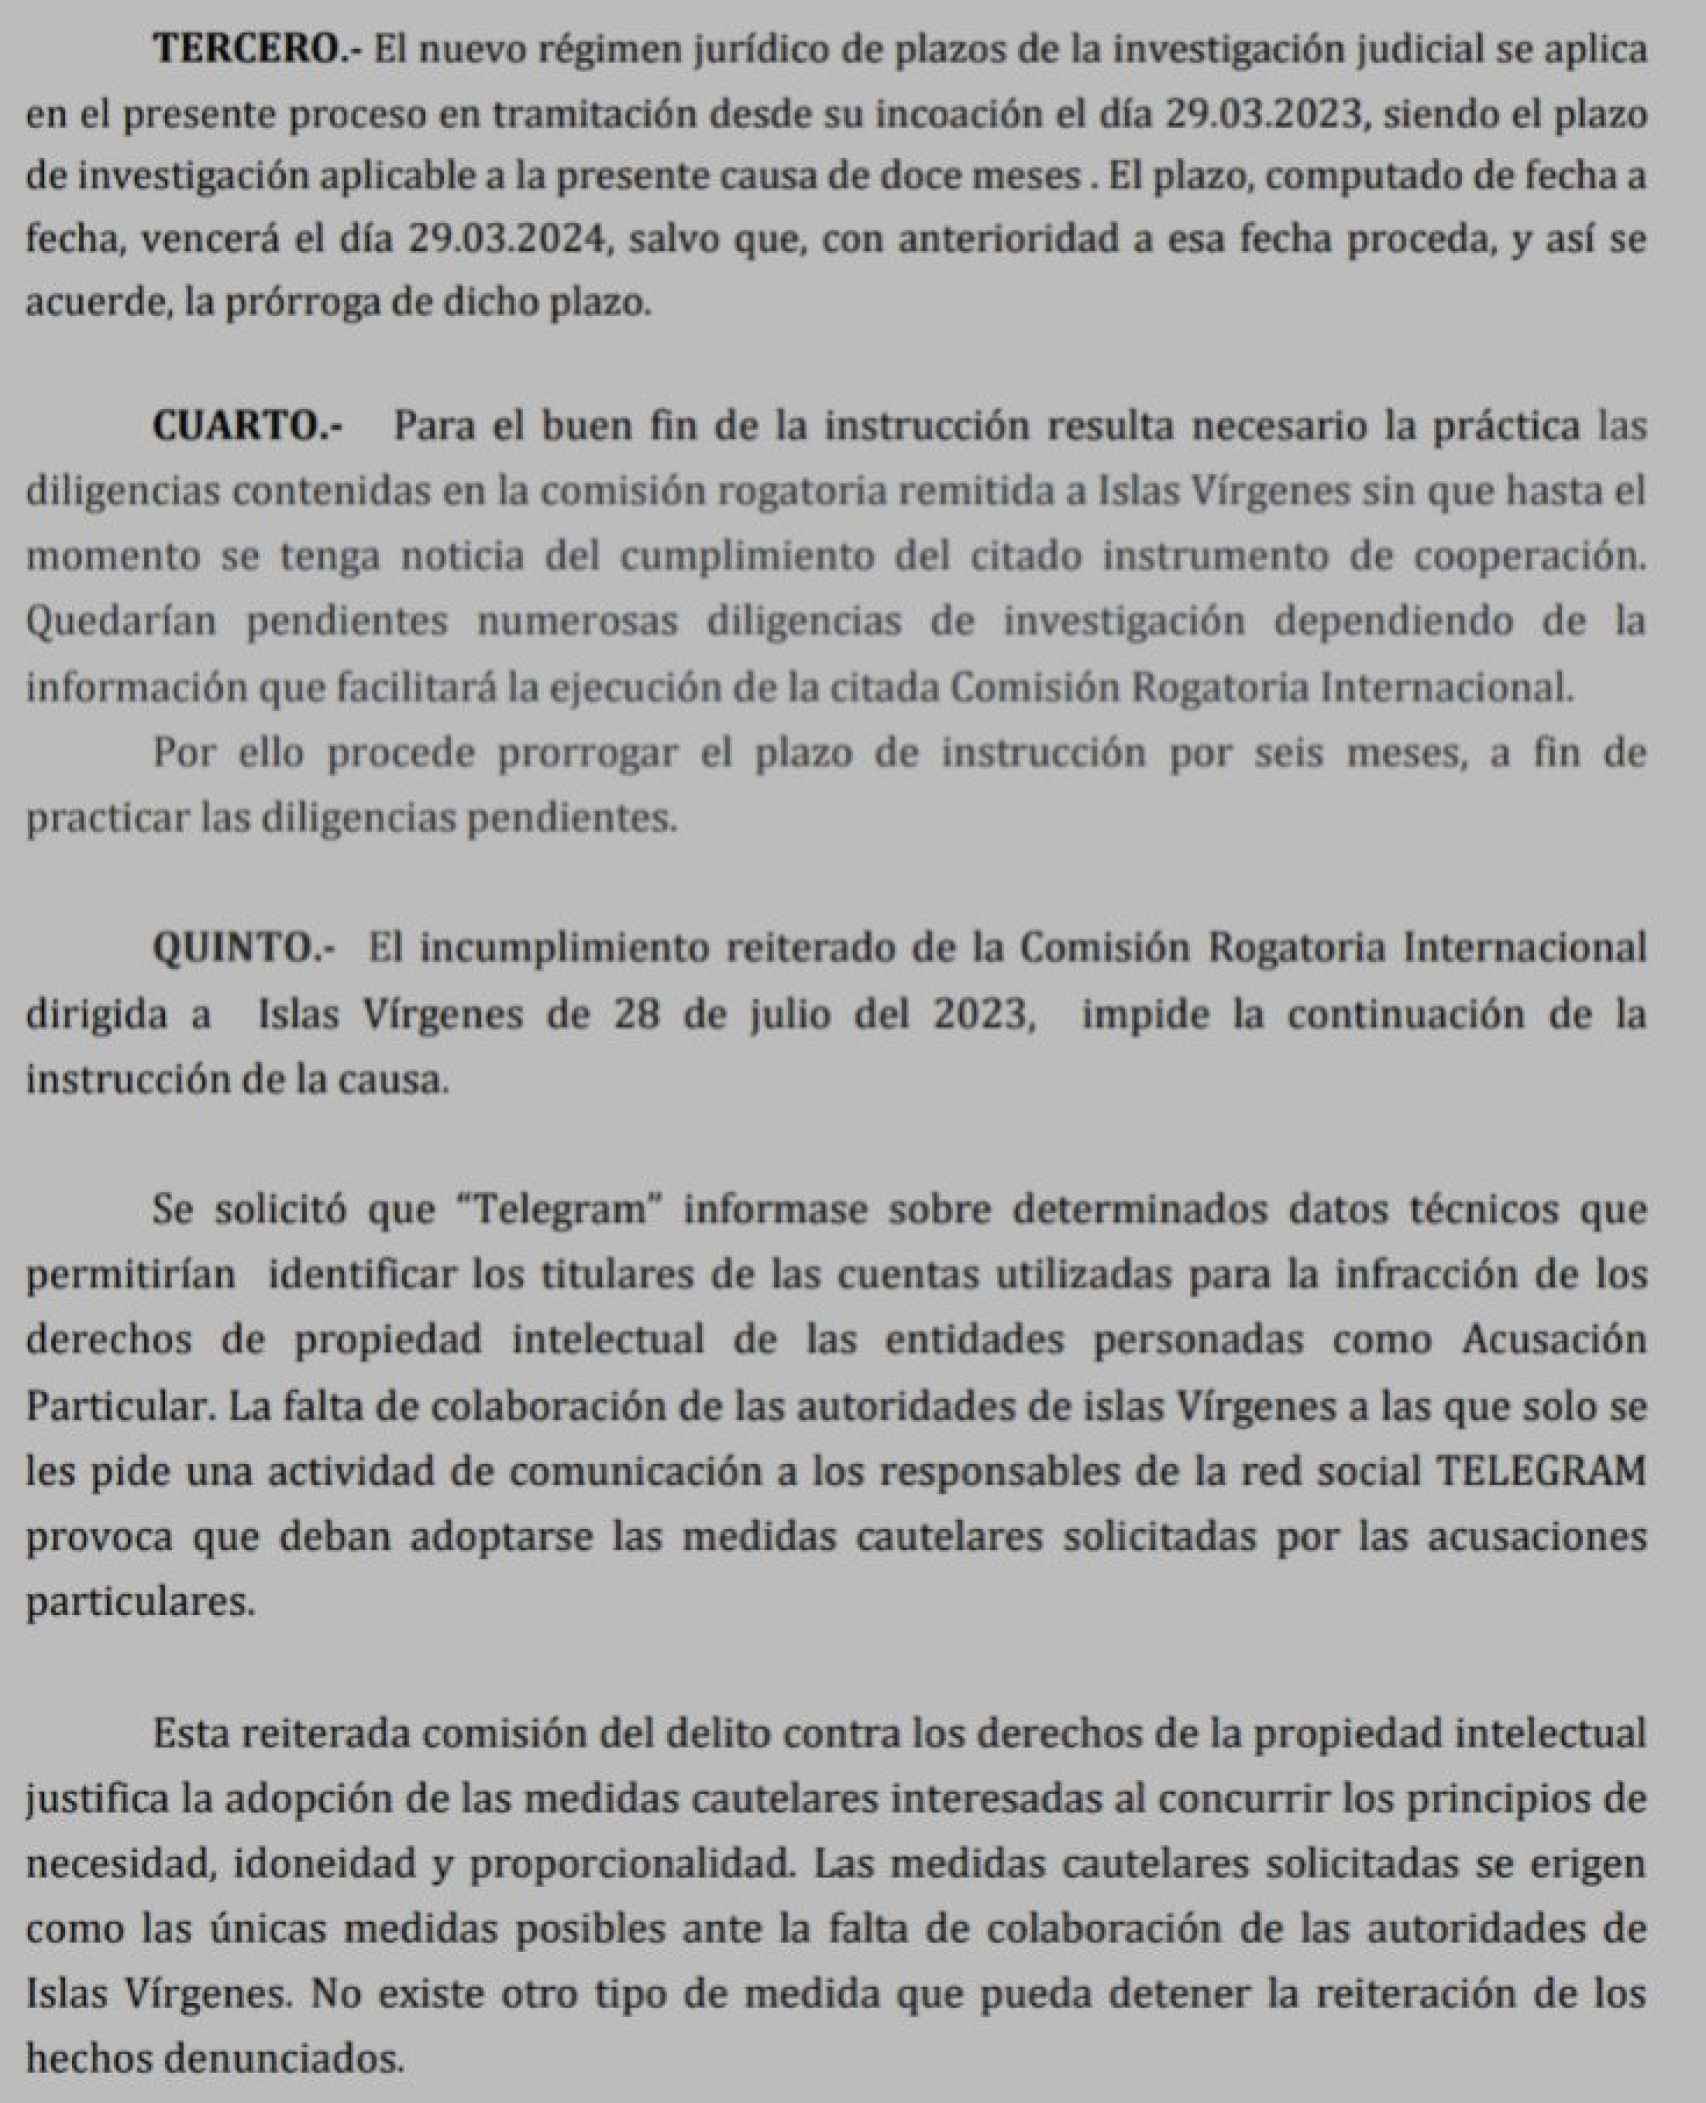 El auto del juez Santiago Pedraz que solicitaba el bloqueo de Telegram en España